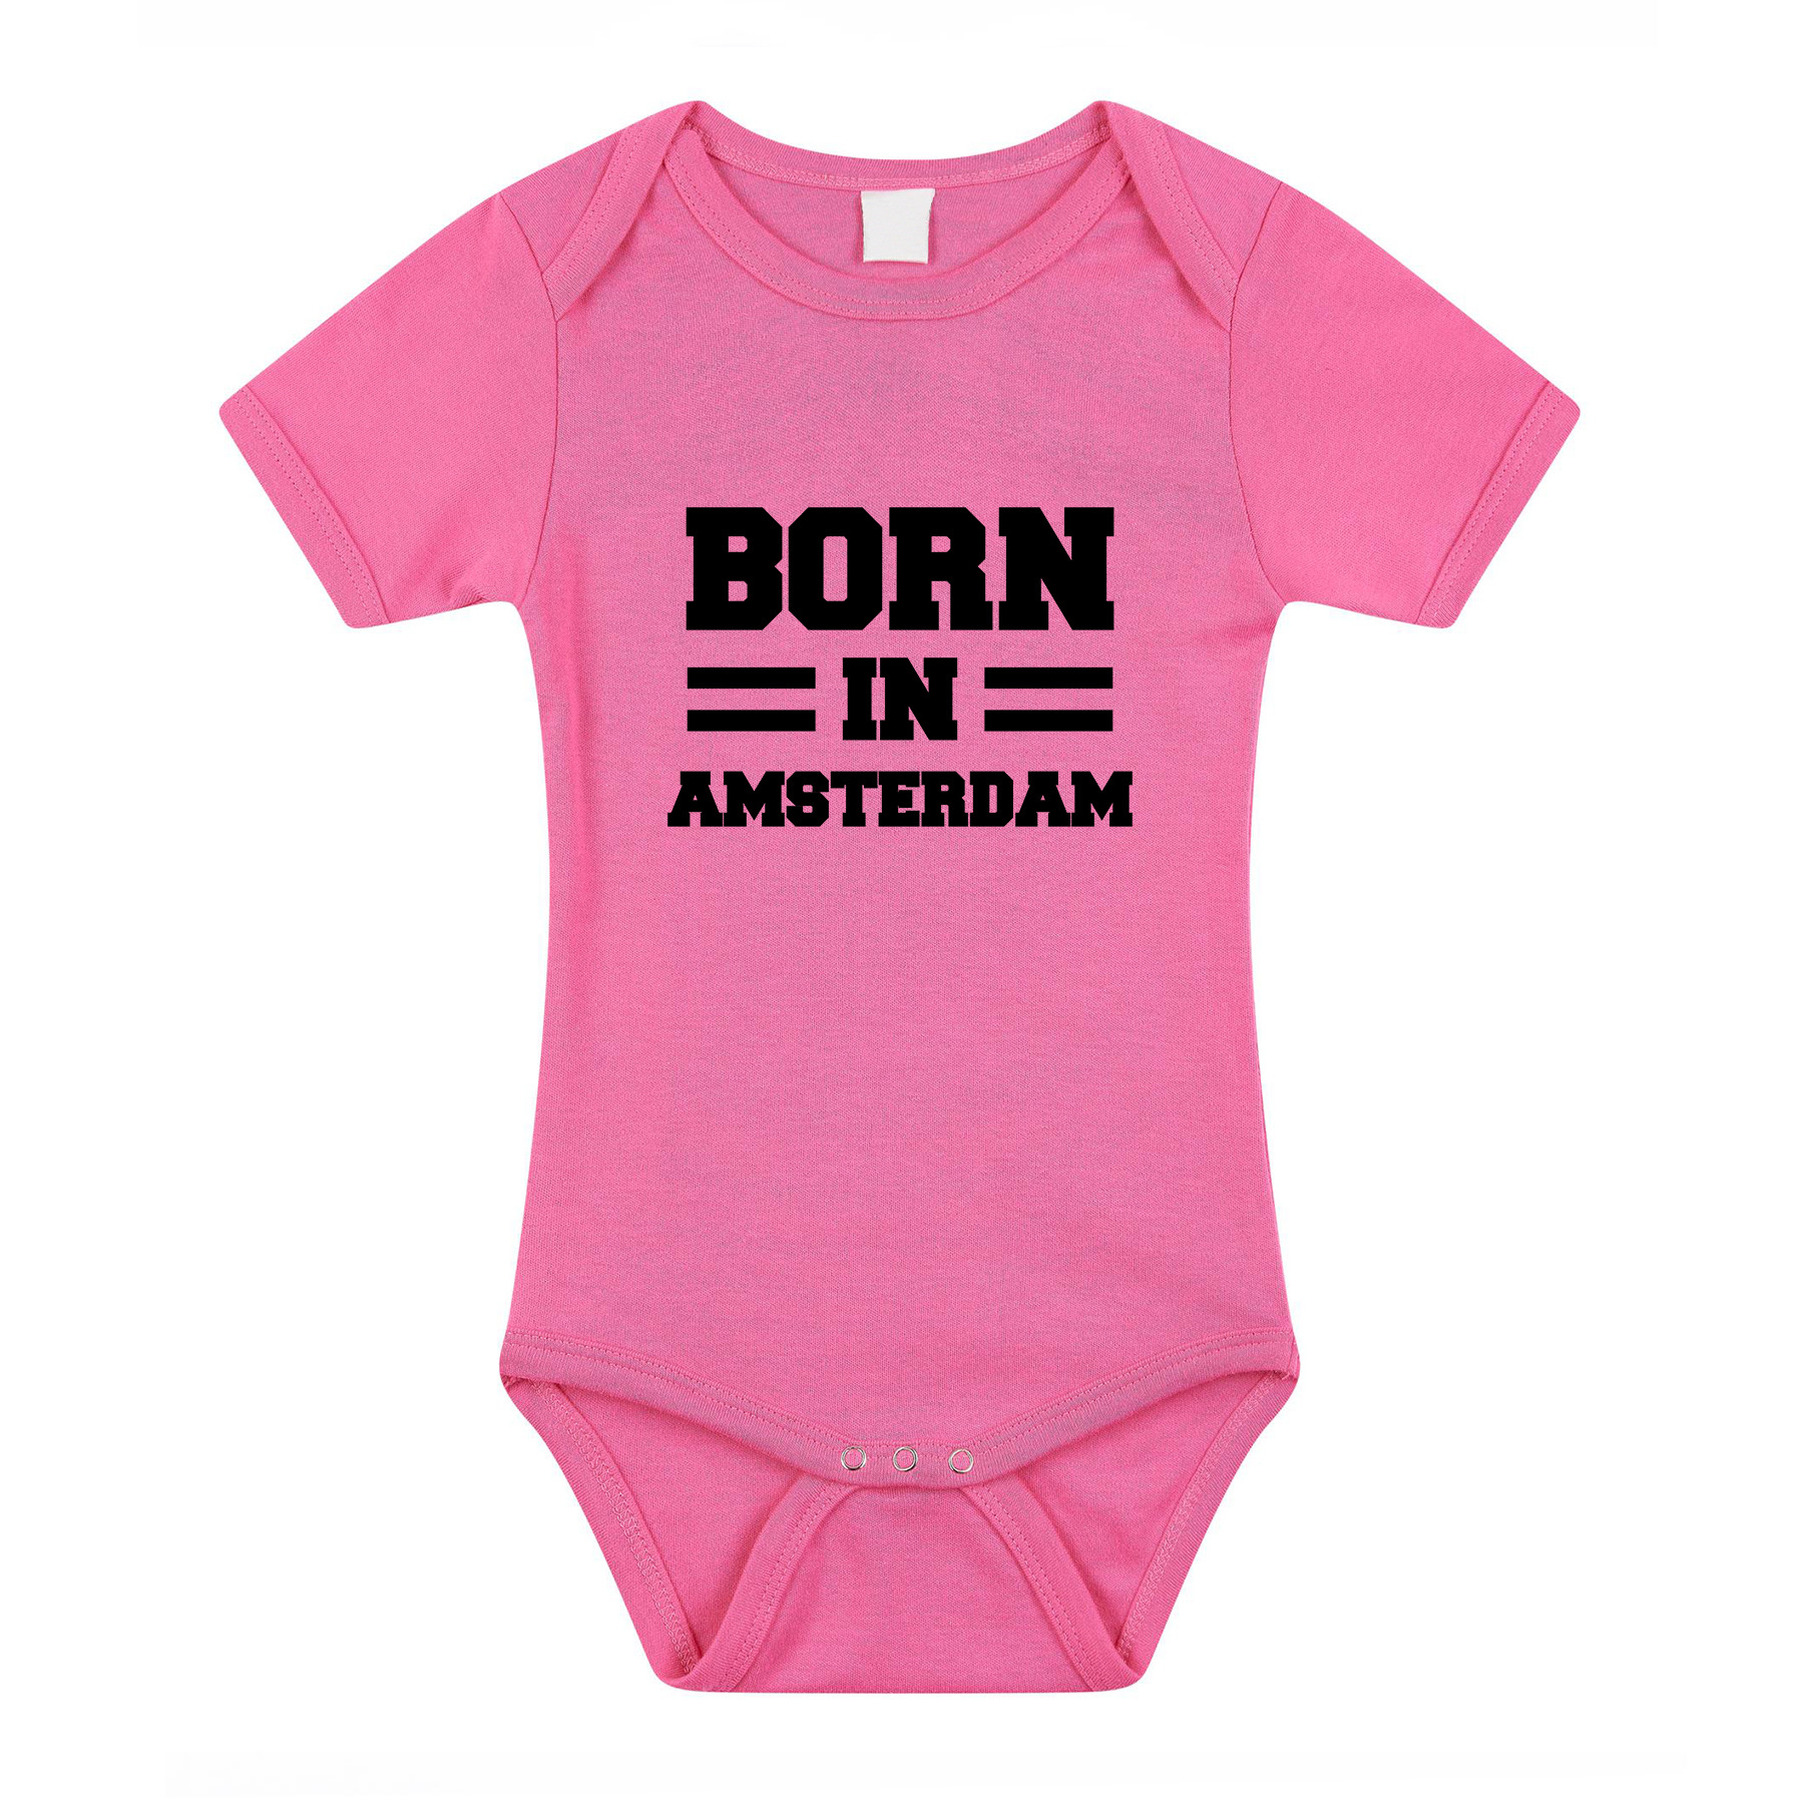 Born in Amsterdam kraamcadeau rompertje roze meisjes